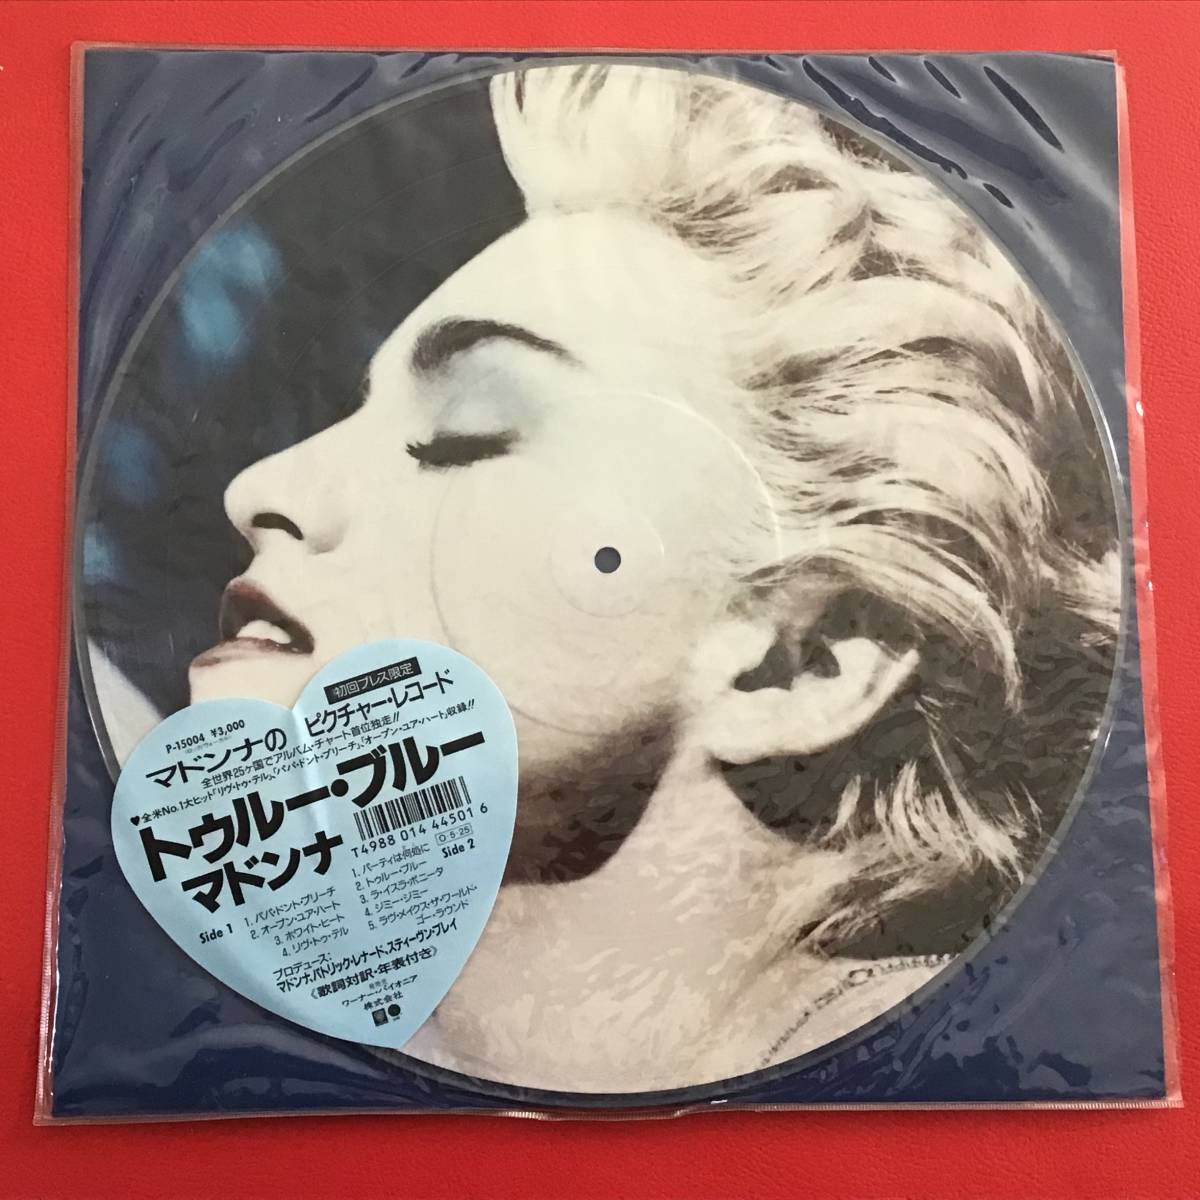 一部予約販売中 Moments マドンナ Rare 美盤 MADONNA Vol. LPレコード ： デモ・未発表曲 貴重音源 ピクチャー盤 4 限定 盤 - Madonna